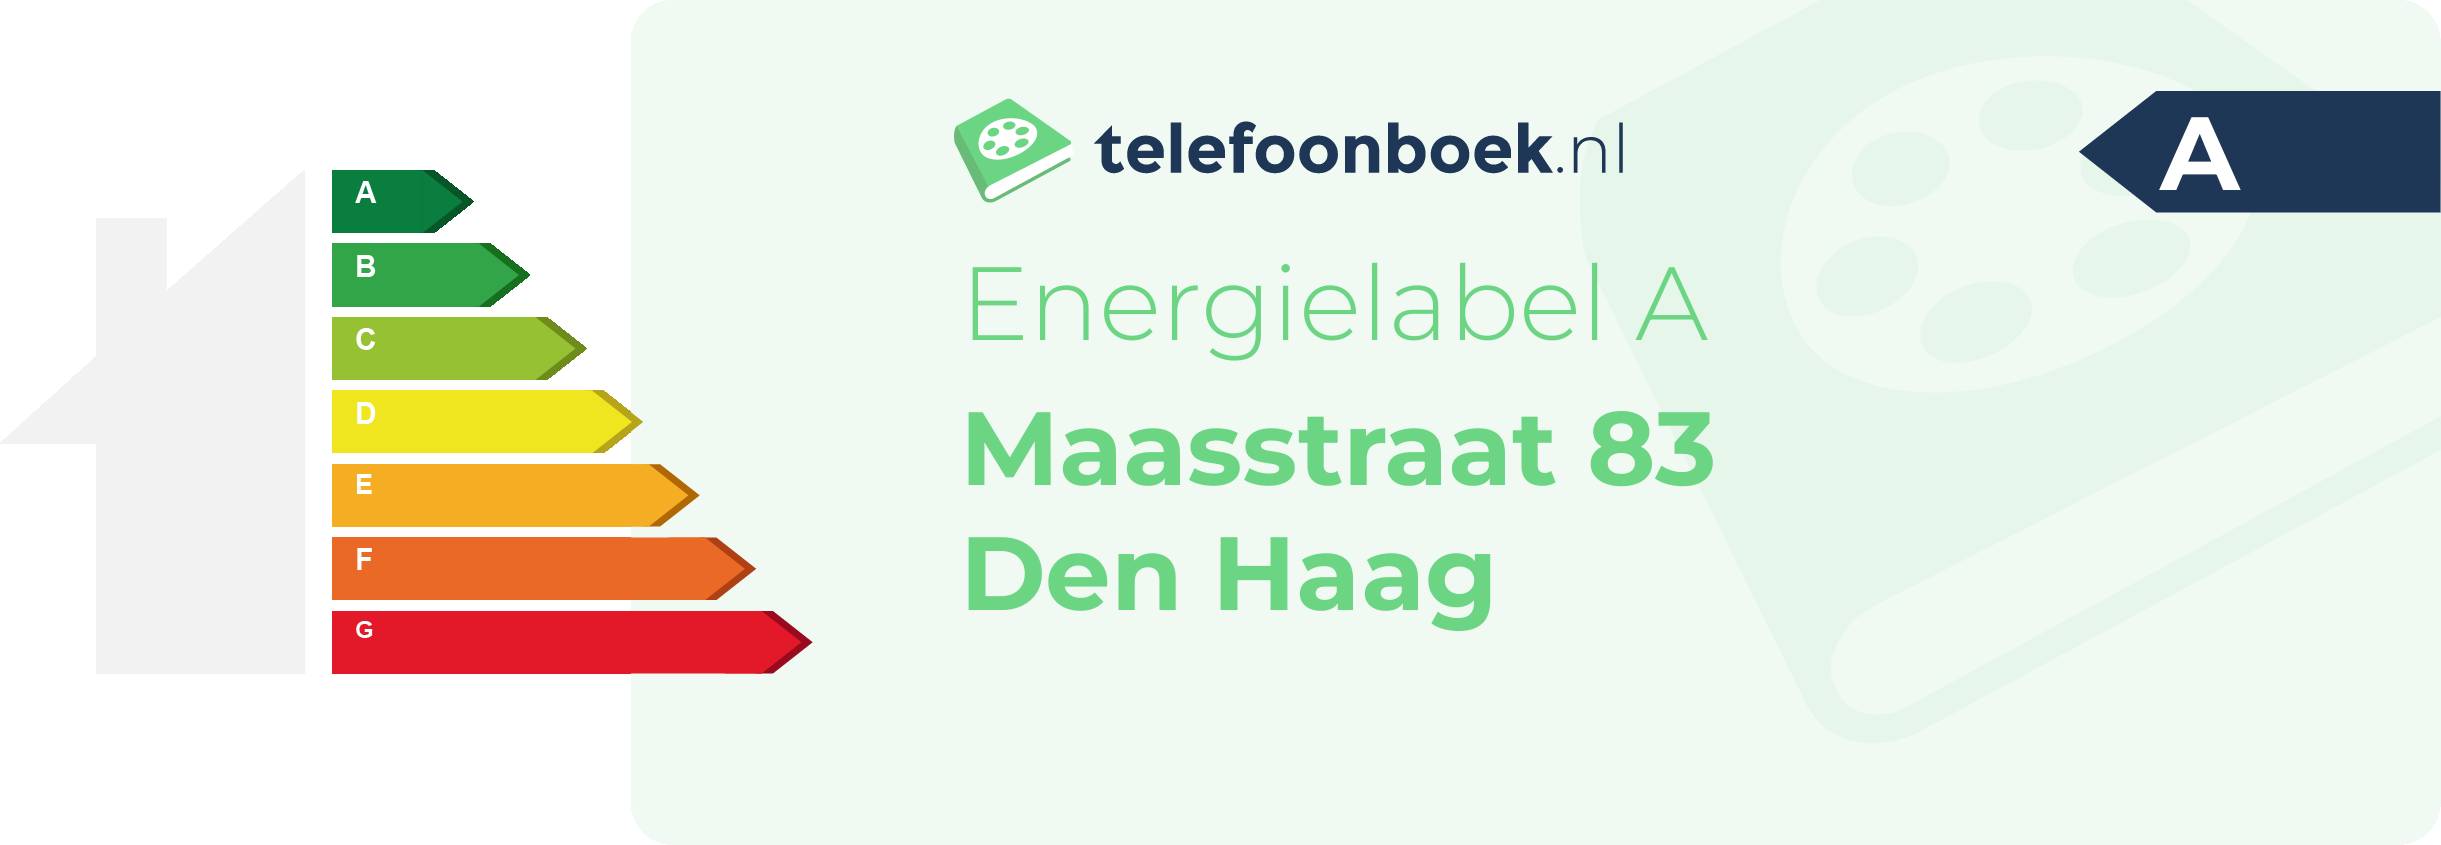 Energielabel Maasstraat 83 Den Haag